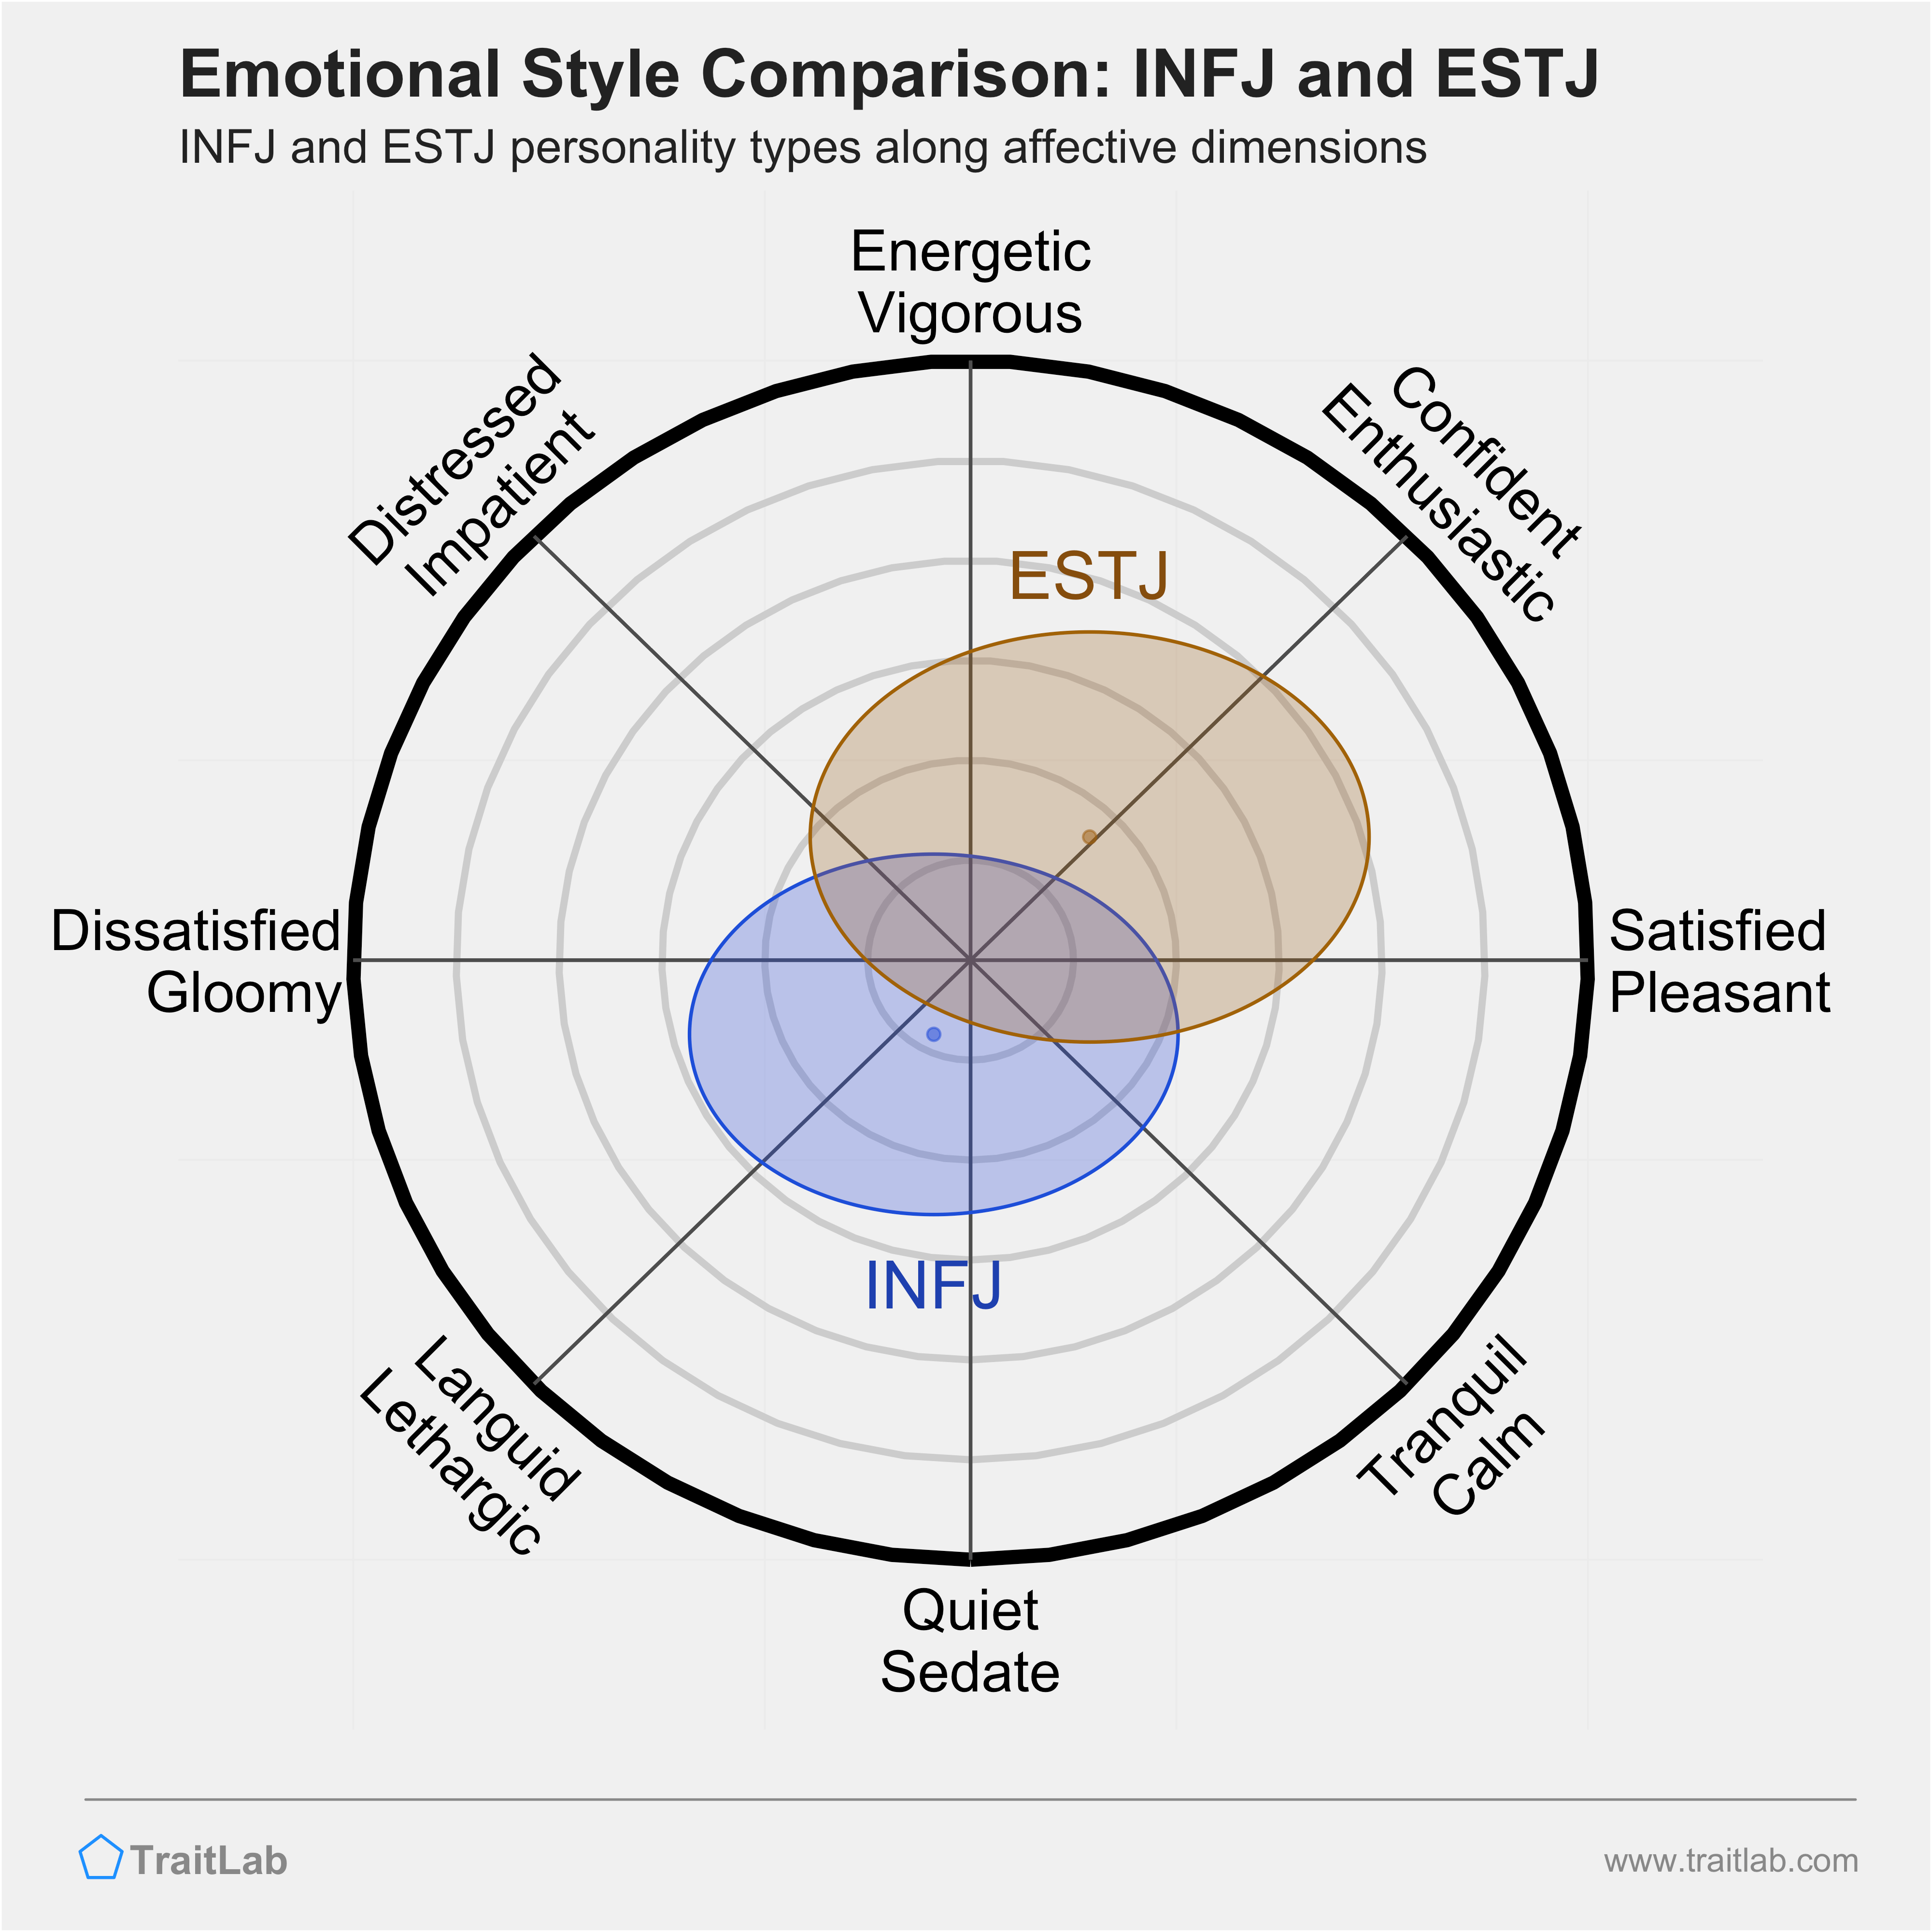 INFJ and ESTJ comparison across emotional (affective) dimensions